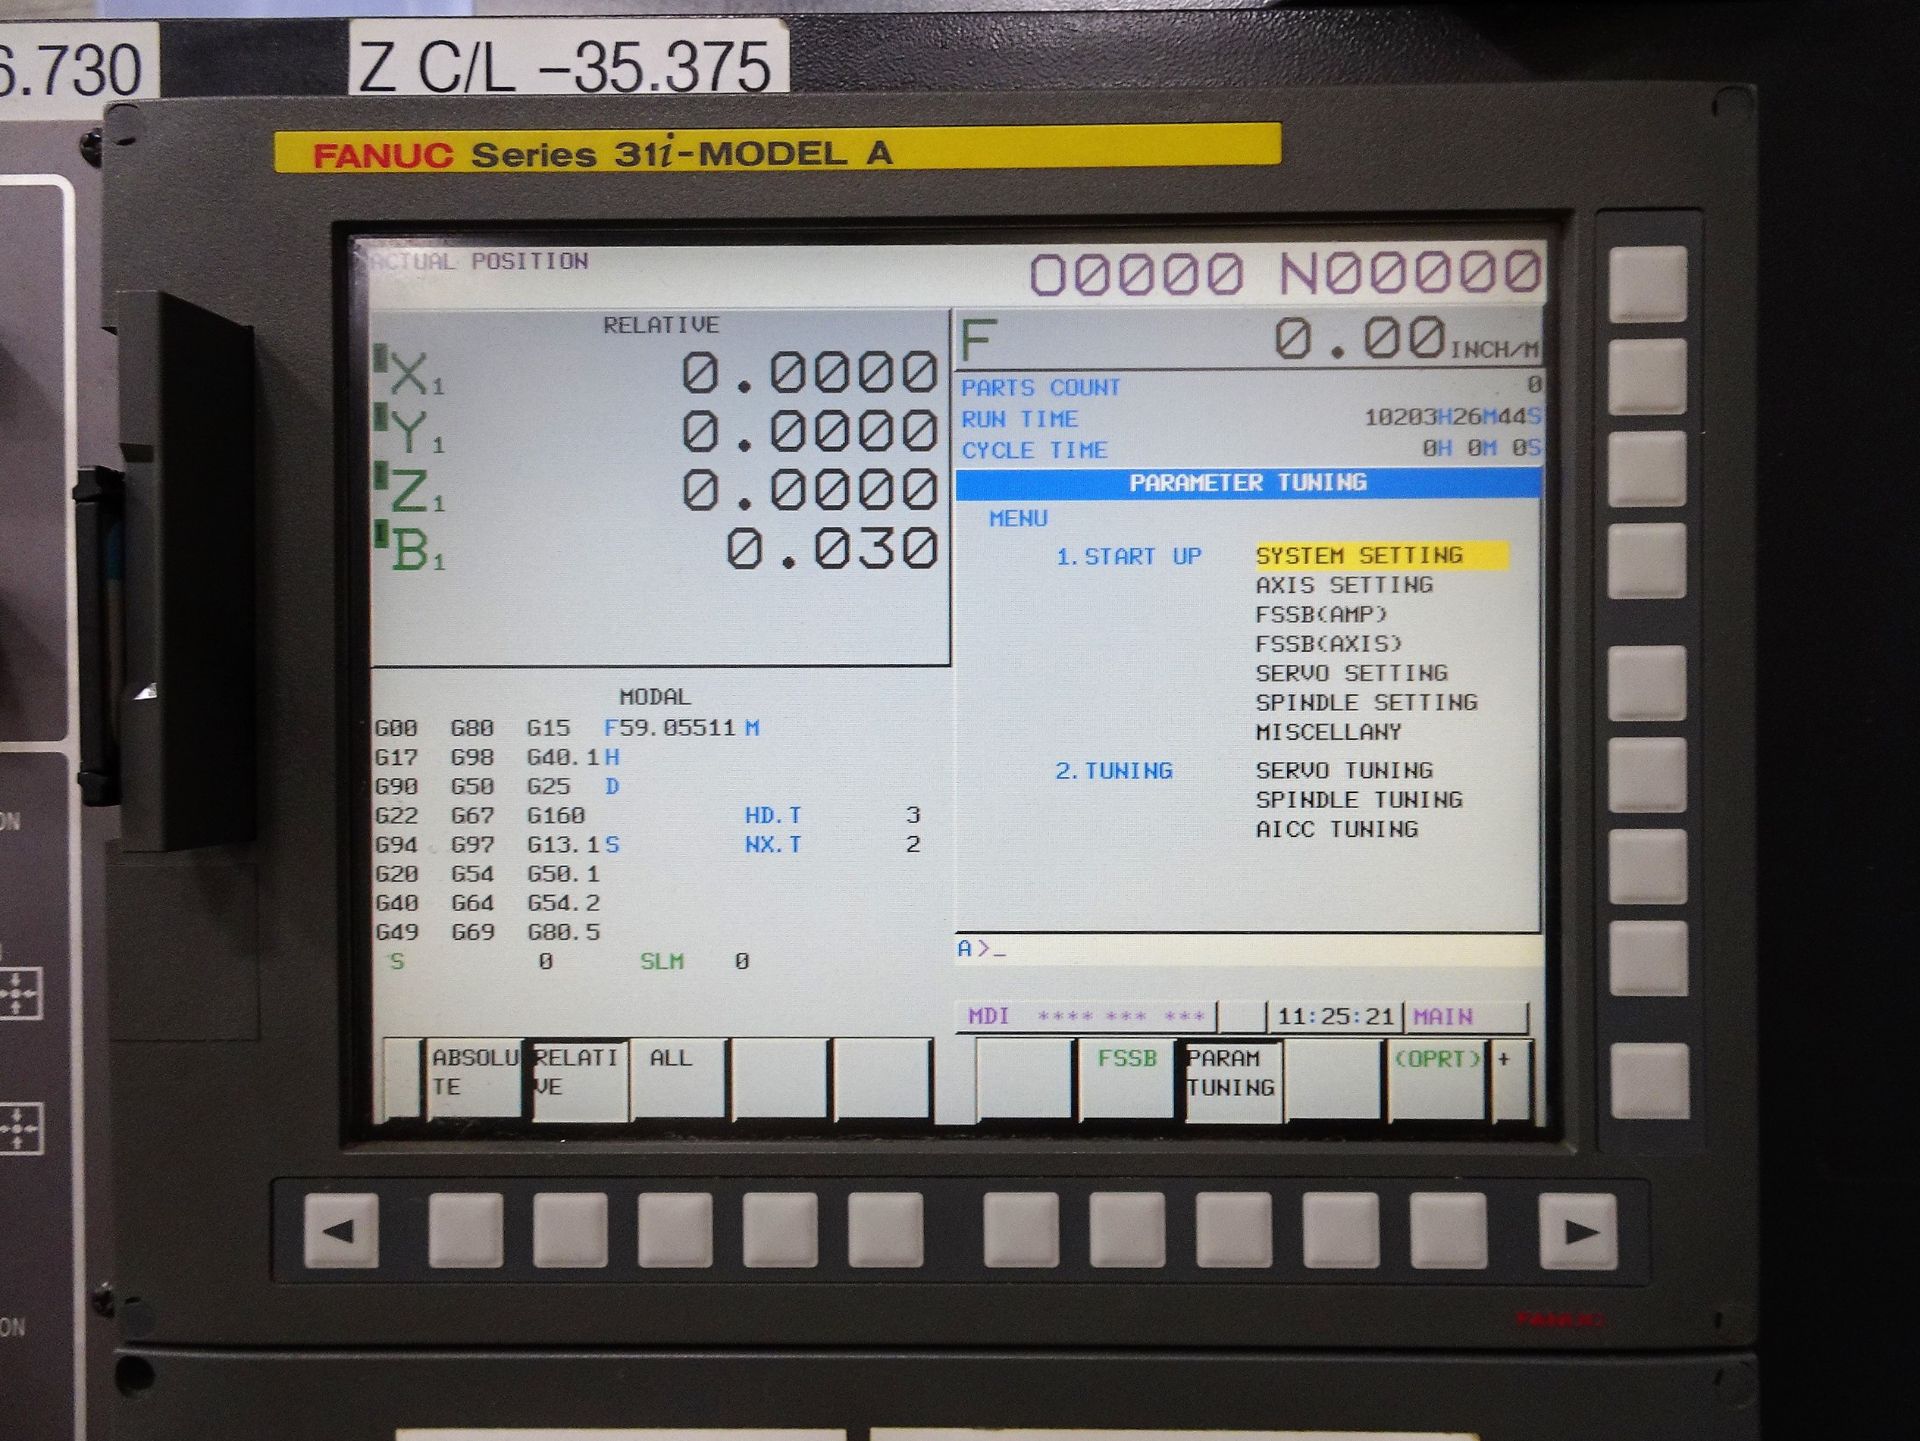 Doosan HP 5100/7APC CNC 4-Axis Horizontal Machining Center - Image 4 of 20